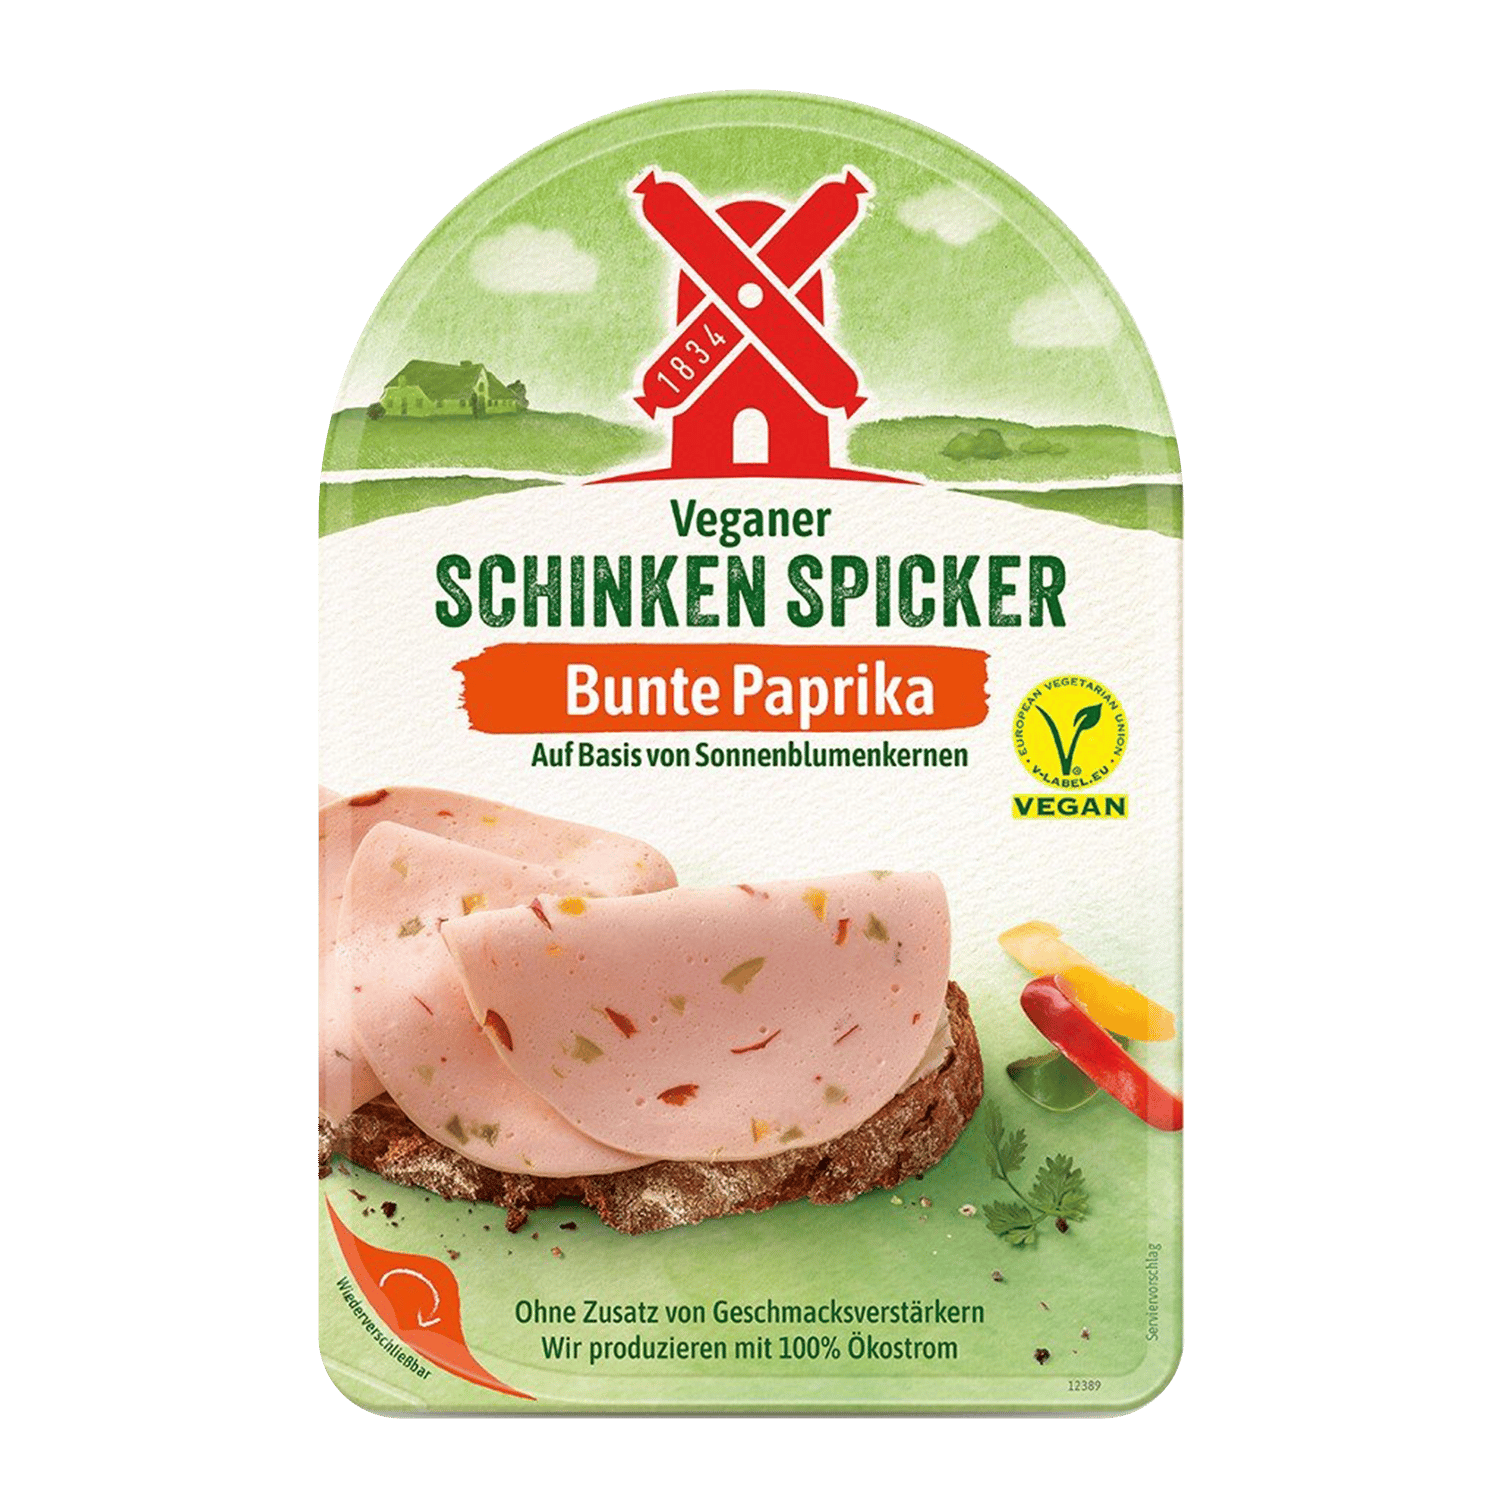 Veganer Schinken Spicker Bunte Paprika, 80g